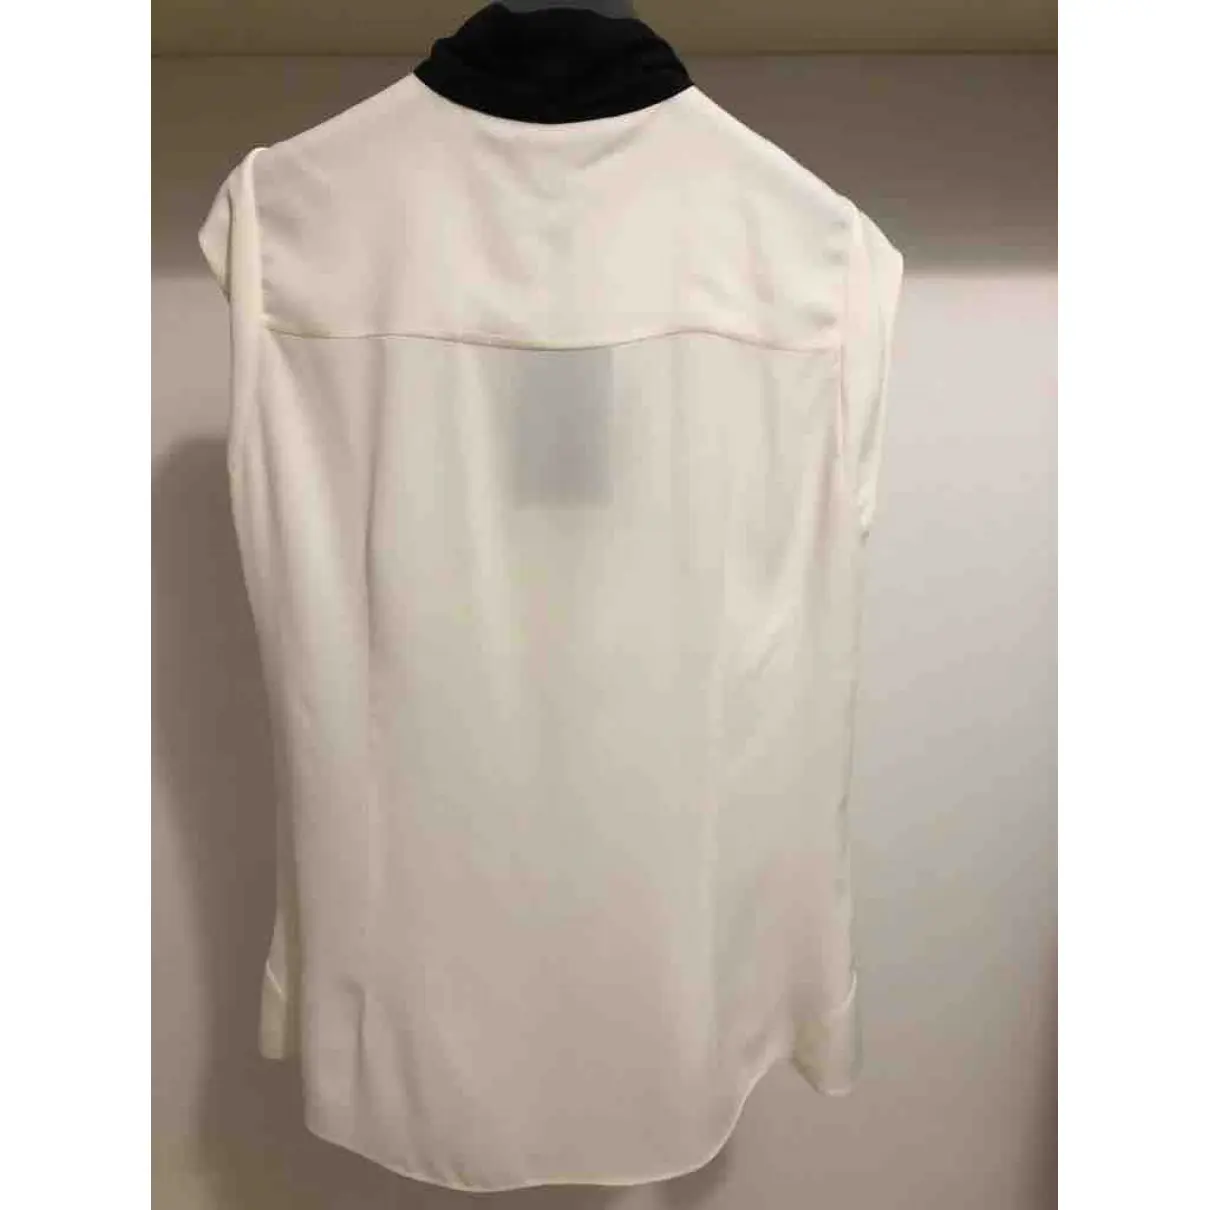 Buy Alexander McQueen Silk blouse online